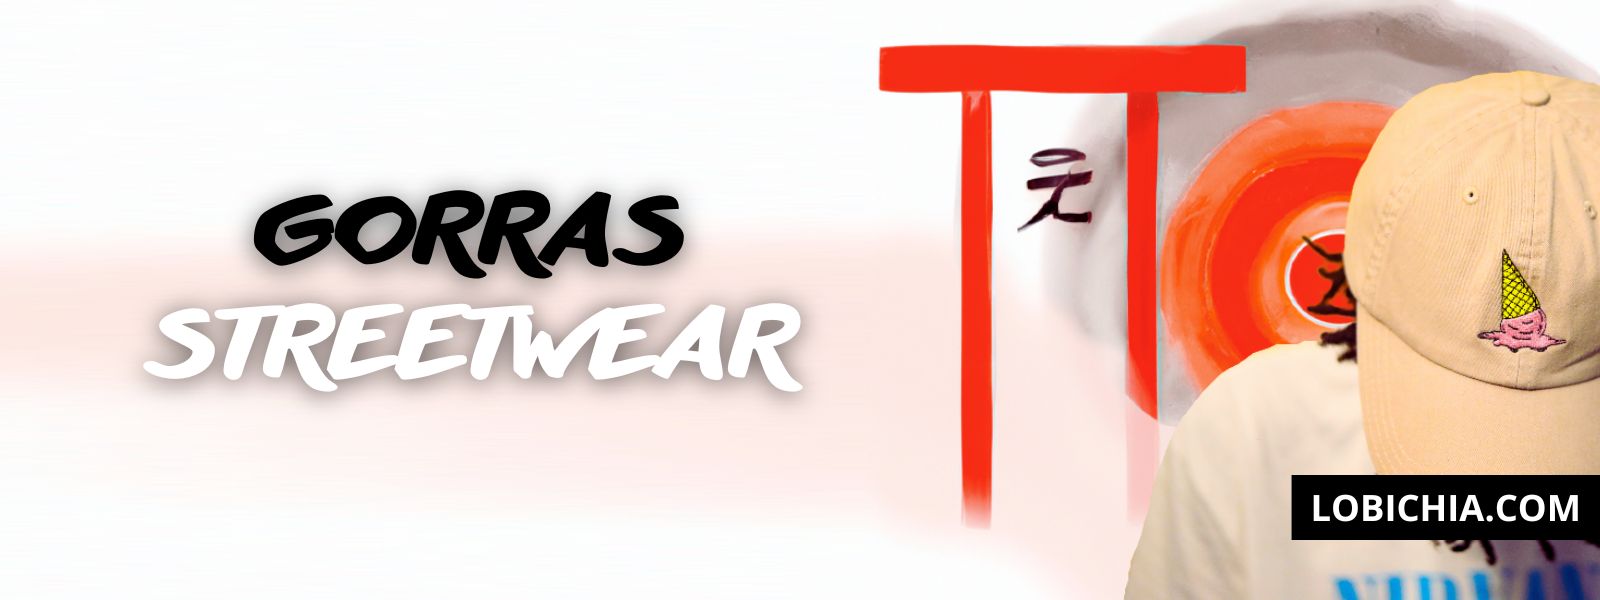 gorras-streetwear